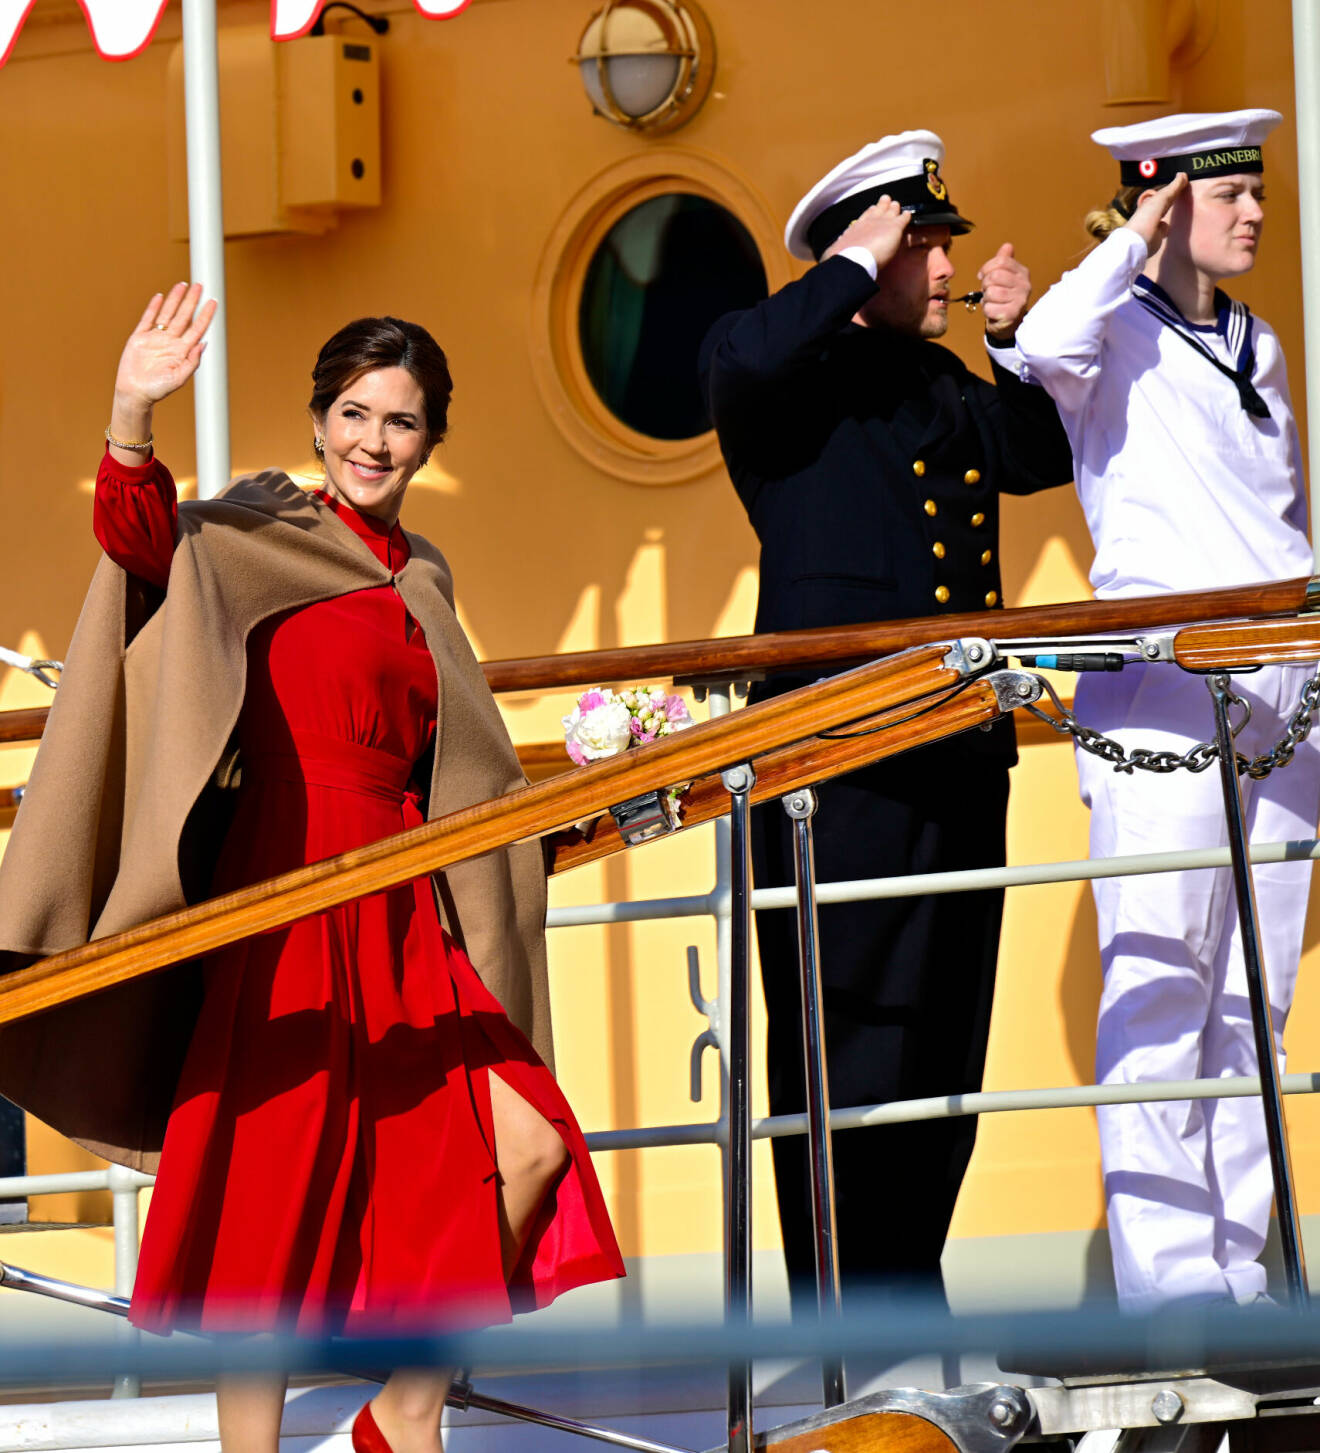 Statsbesök från Danmark – drottning Mary går ombord på Dannebrog inför svarsmottagningen